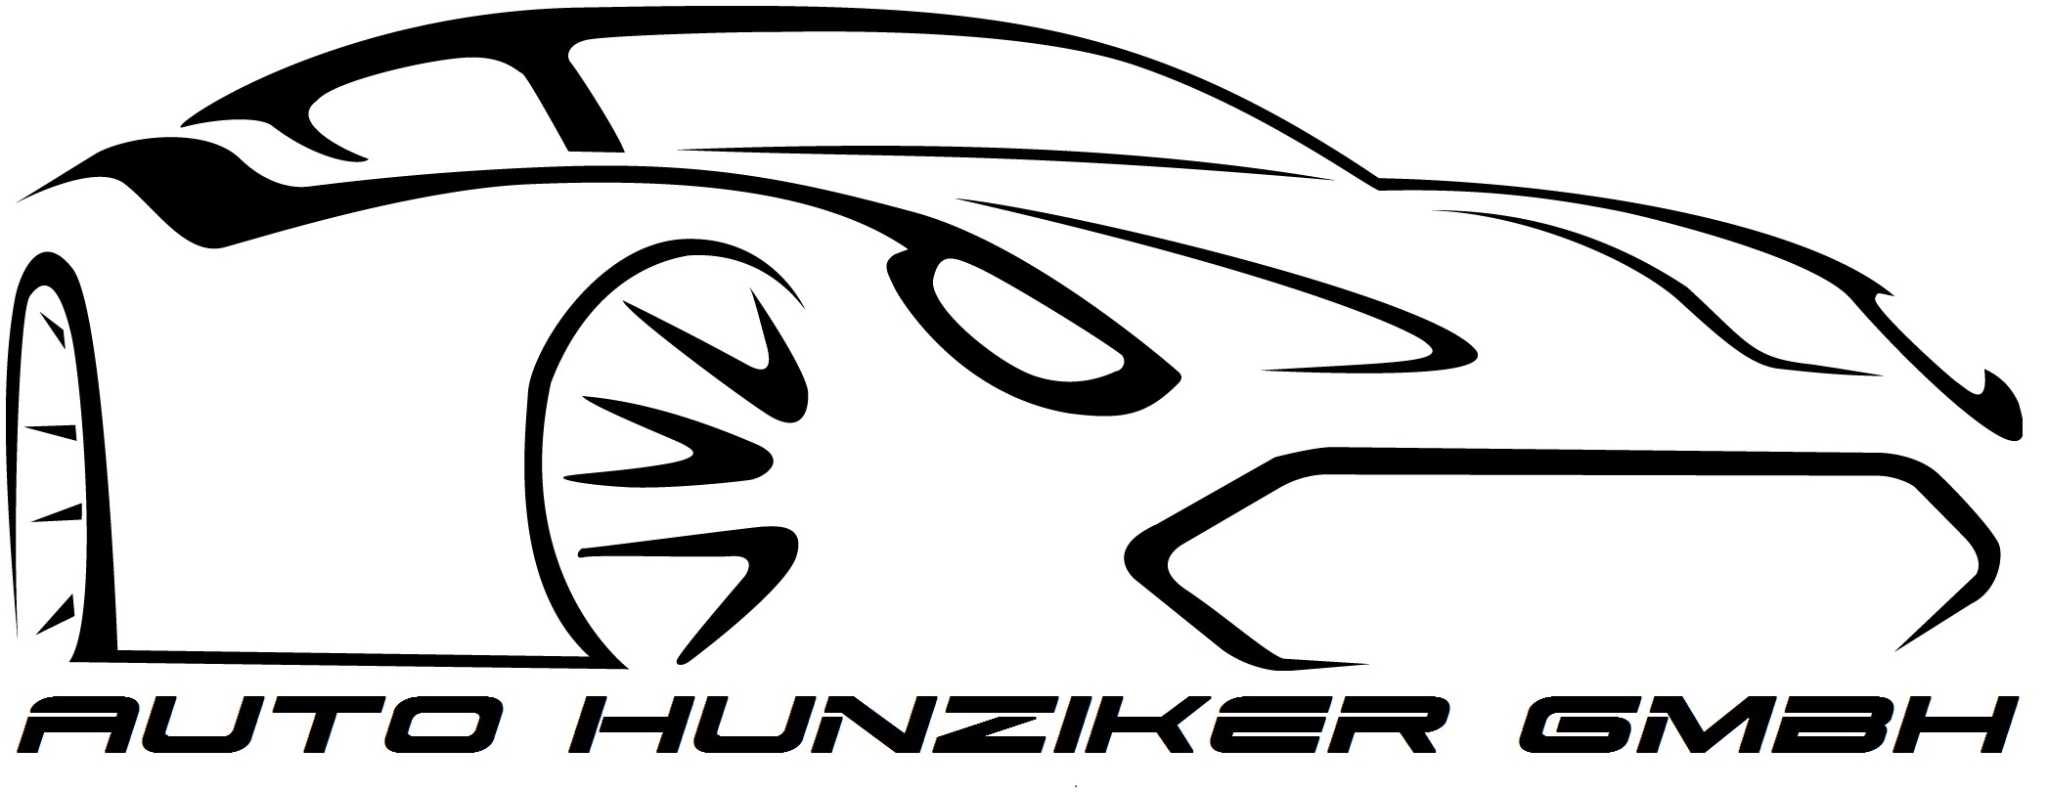 Auto Hunziker GmbH